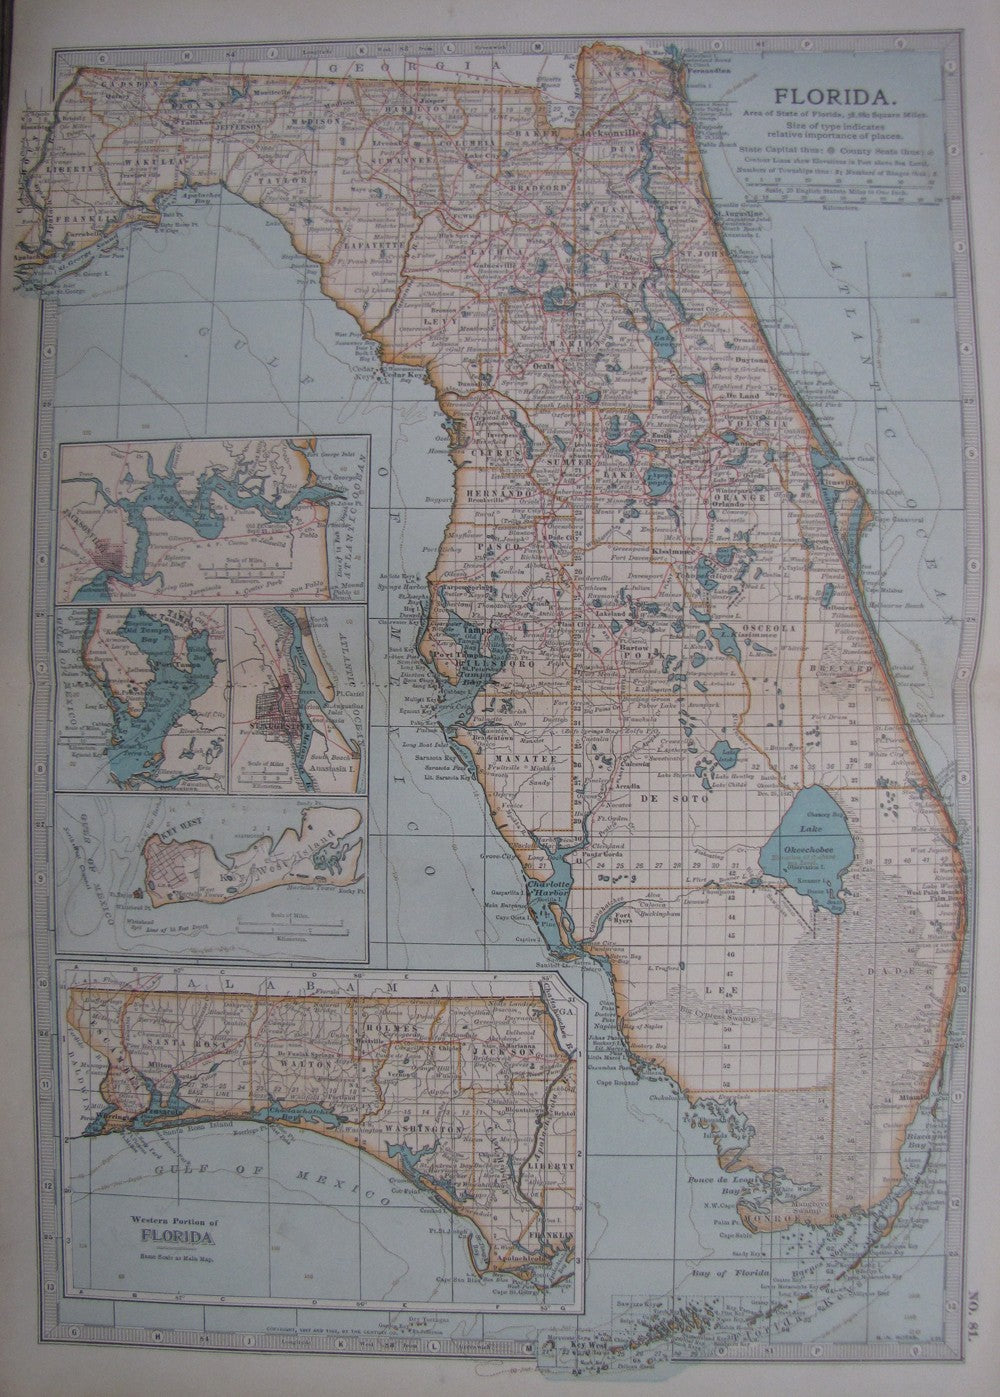 Florida, No.81, Encyclopaedia Britannica 1903